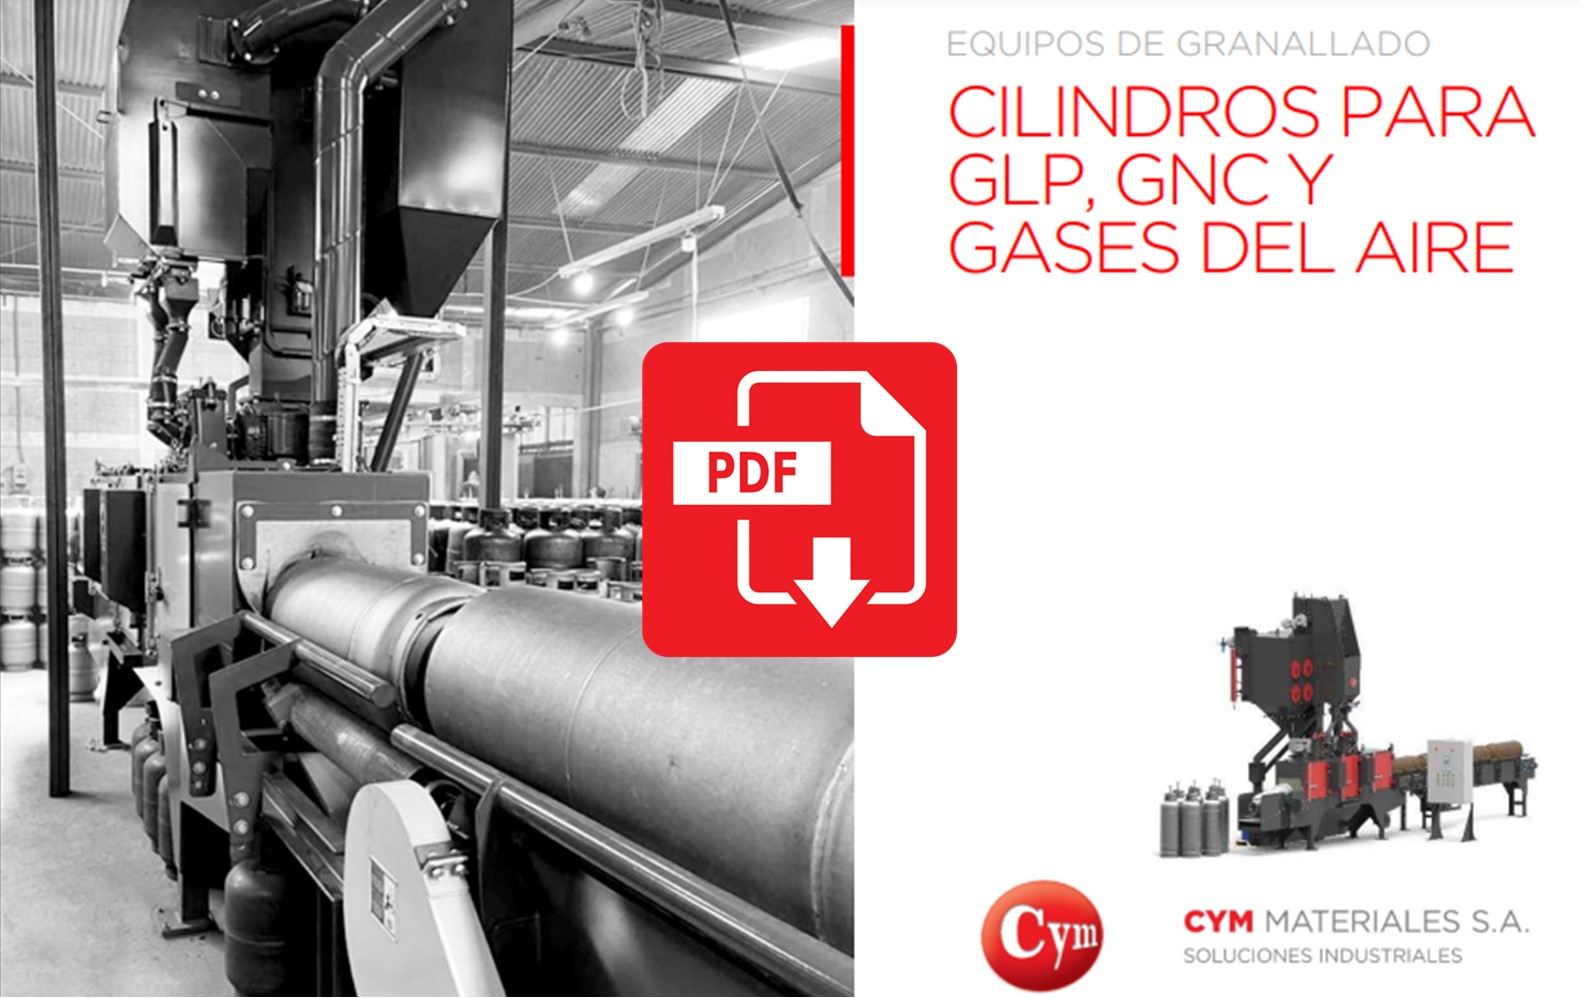 granalladora-para-cilindros-GLP-GNC-cym